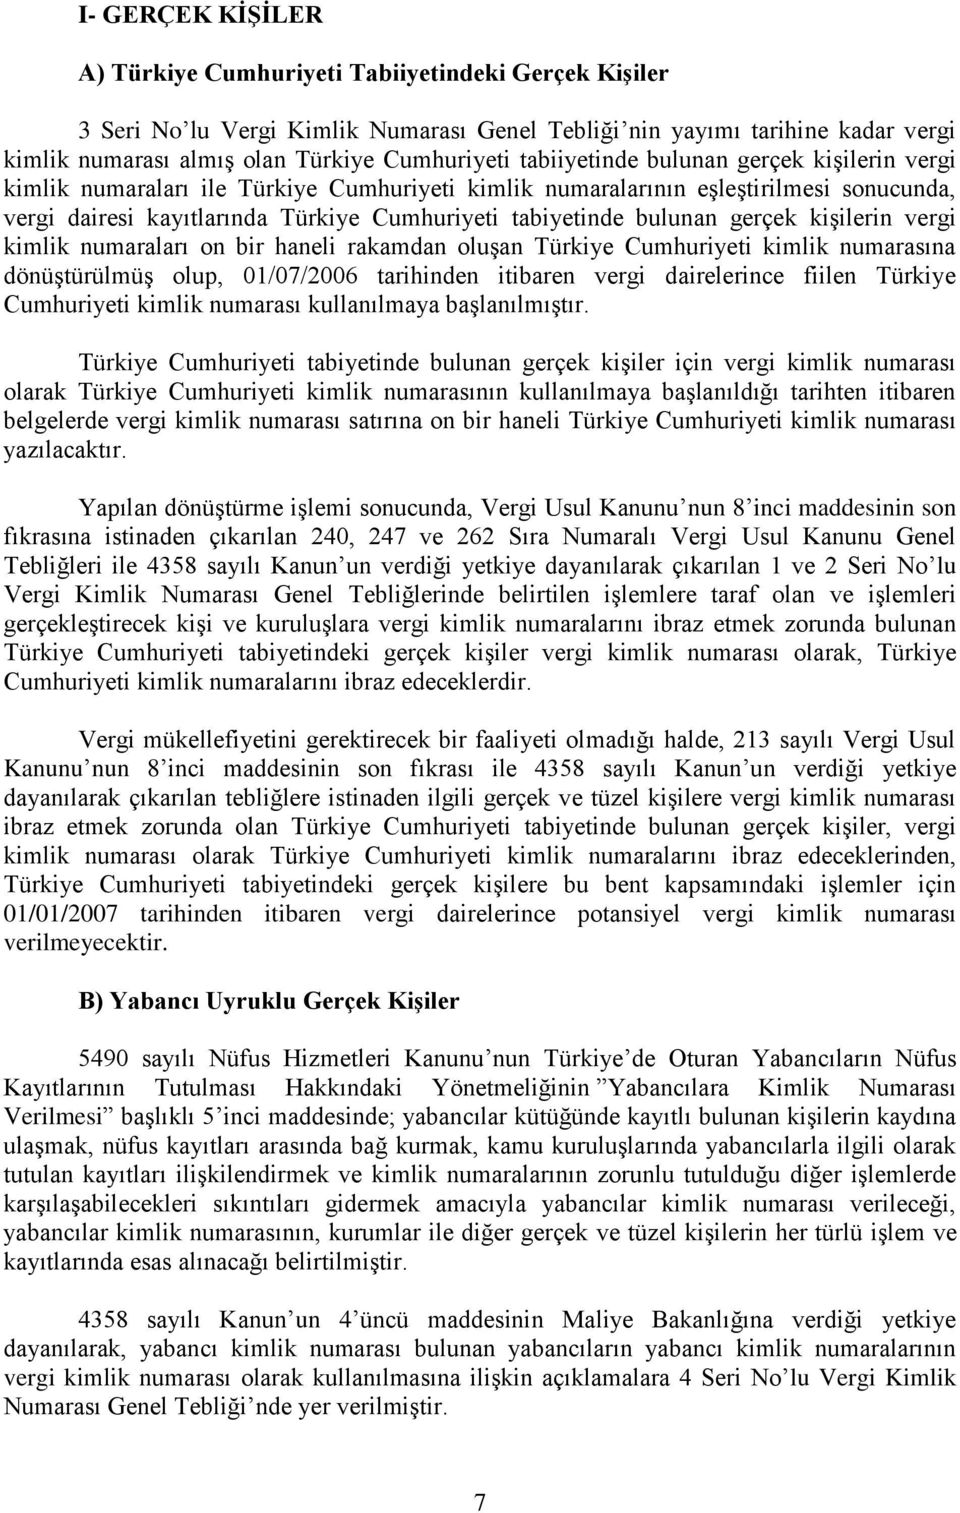 gerçek kişilerin vergi kimlik numaraları on bir haneli rakamdan oluşan Türkiye Cumhuriyeti kimlik numarasına dönüştürülmüş olup, 01/07/2006 tarihinden itibaren vergi dairelerince fiilen Türkiye